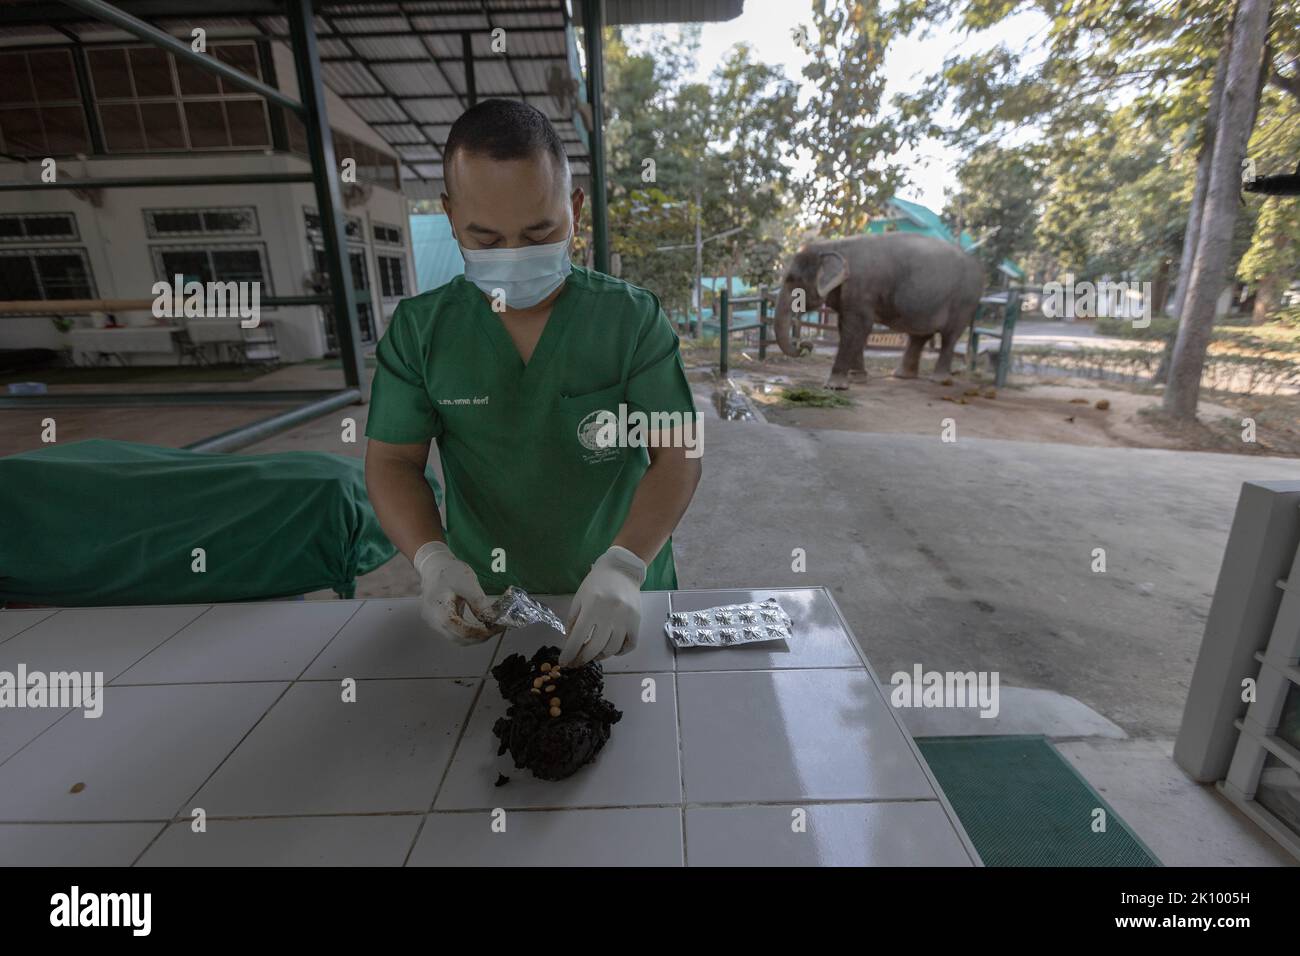 Tierarzt stopft im Friends of the Asian Elephant Hospital einen Tamarindenball mit Vitaminpillen für Elefant Chand Nuan. Das Friends of the Asian Elephant Hospital im Norden Thailands ist das erste Elefantenkrankenhaus der Welt. Seit 1993 behandelt sie Elefanten mit Beschwerden, die von Augeninfektionen bis zu Landminenverletzungen reichen. Stockfoto